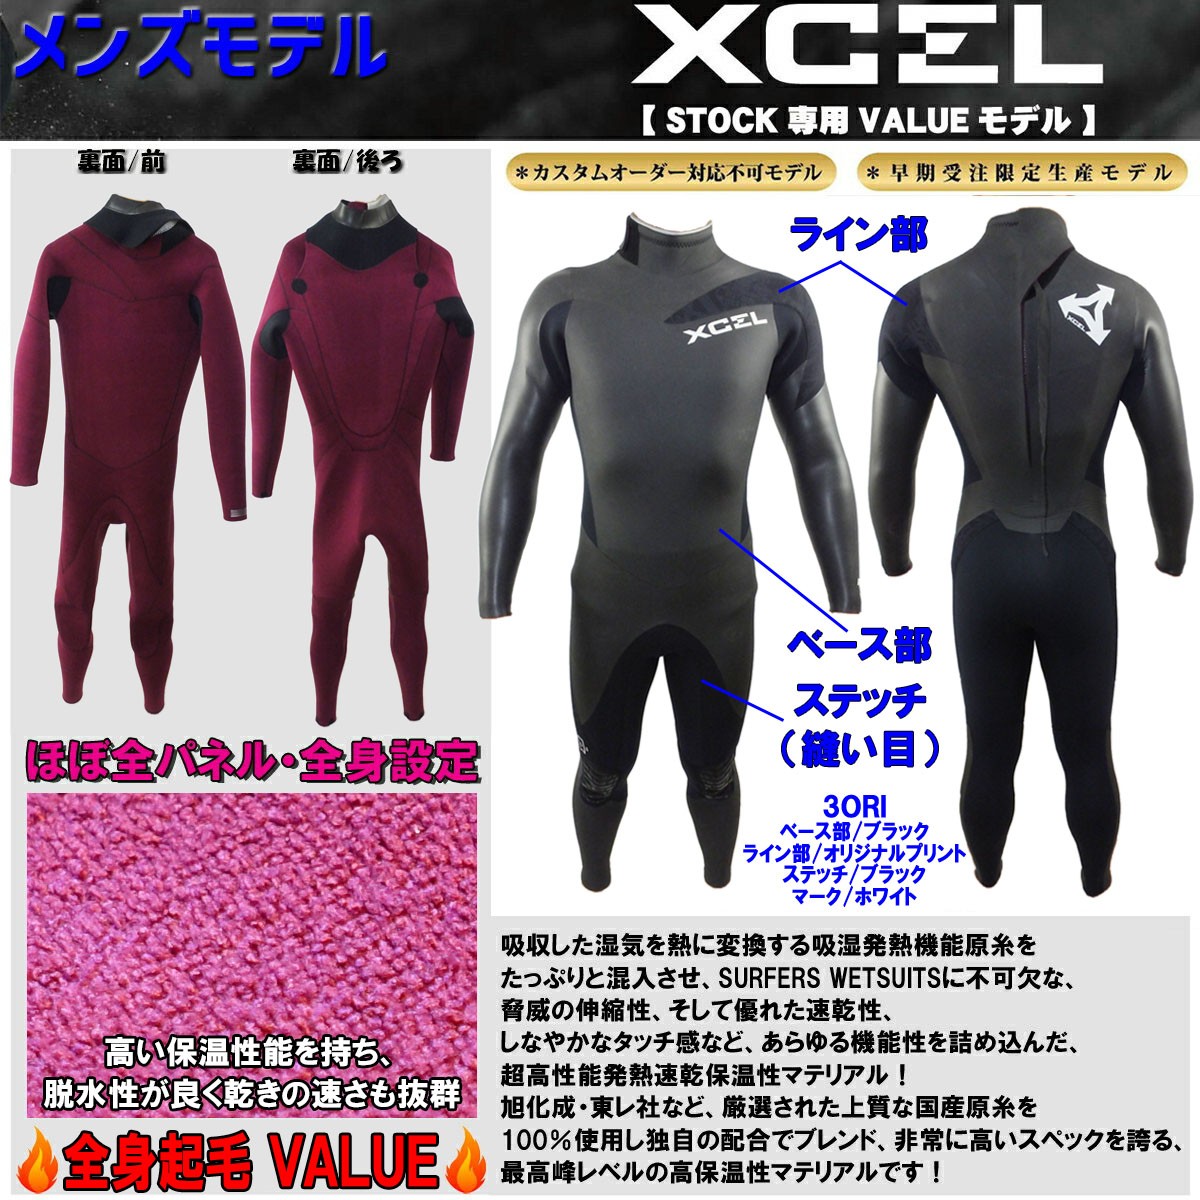 2018年/2019年 XCEL エクセル ウェットスーツ セミドライ メンズ 